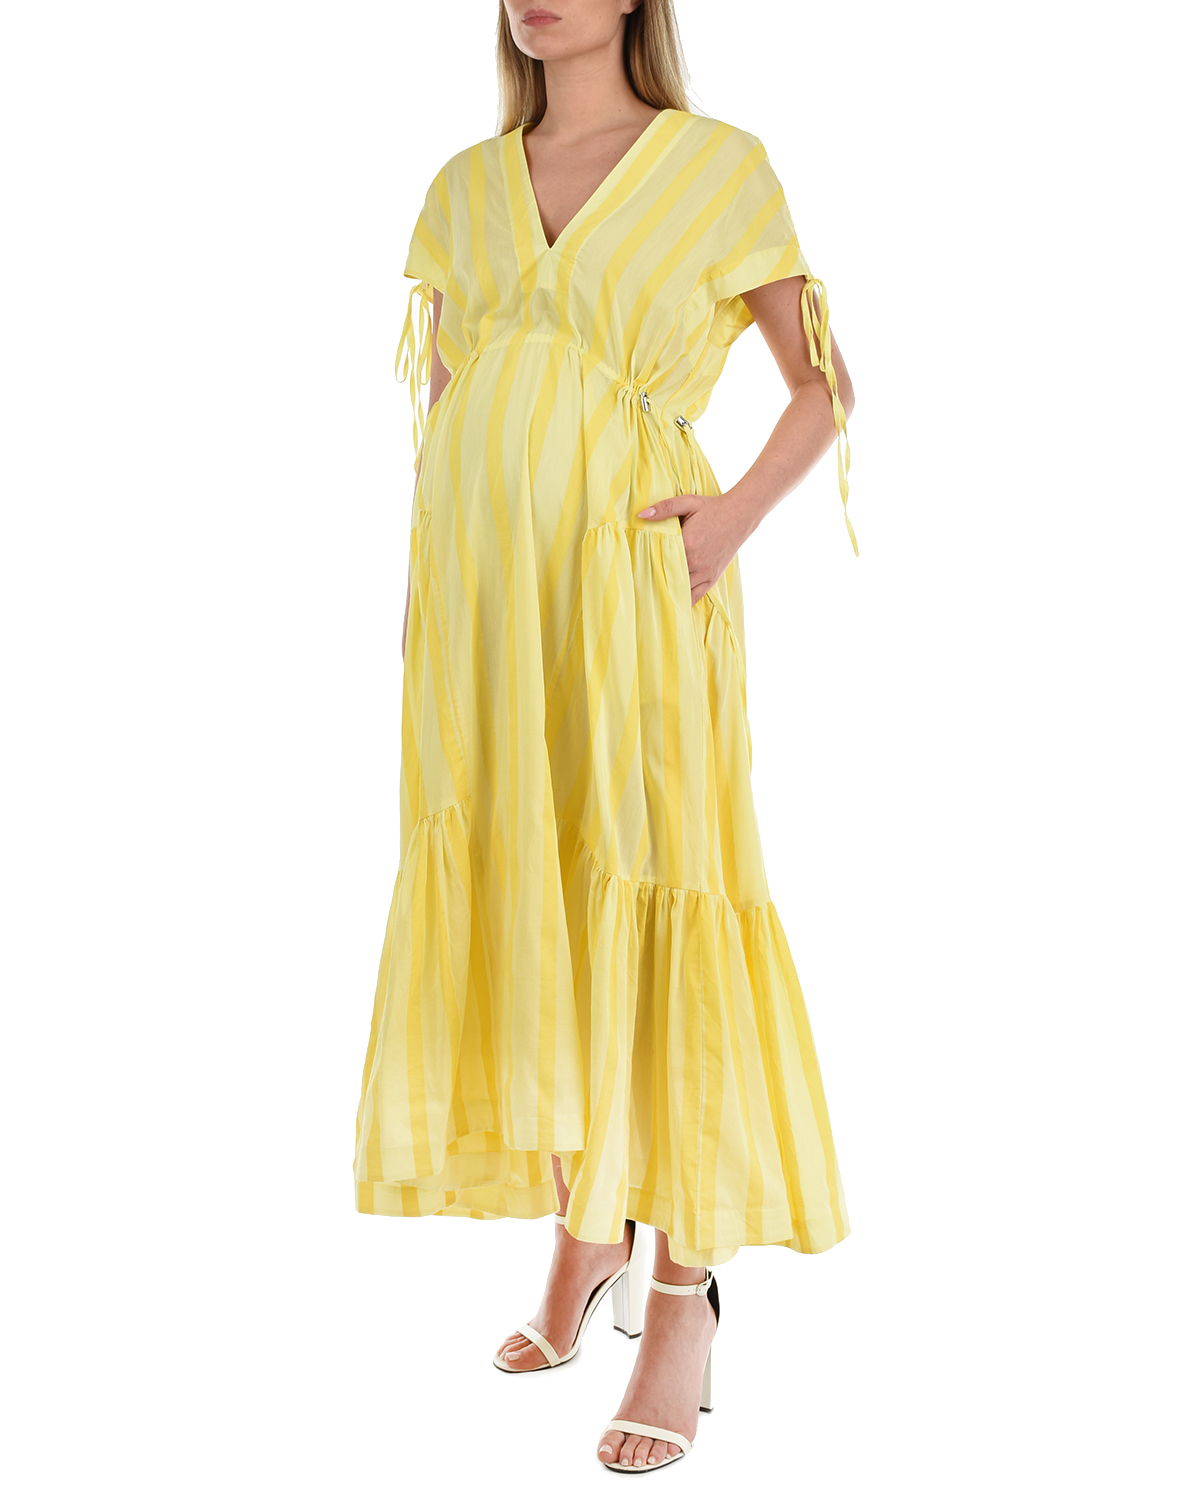 Желтое платье в полоску LOVE BIRDS, размер 40, цвет желтый - фото 4